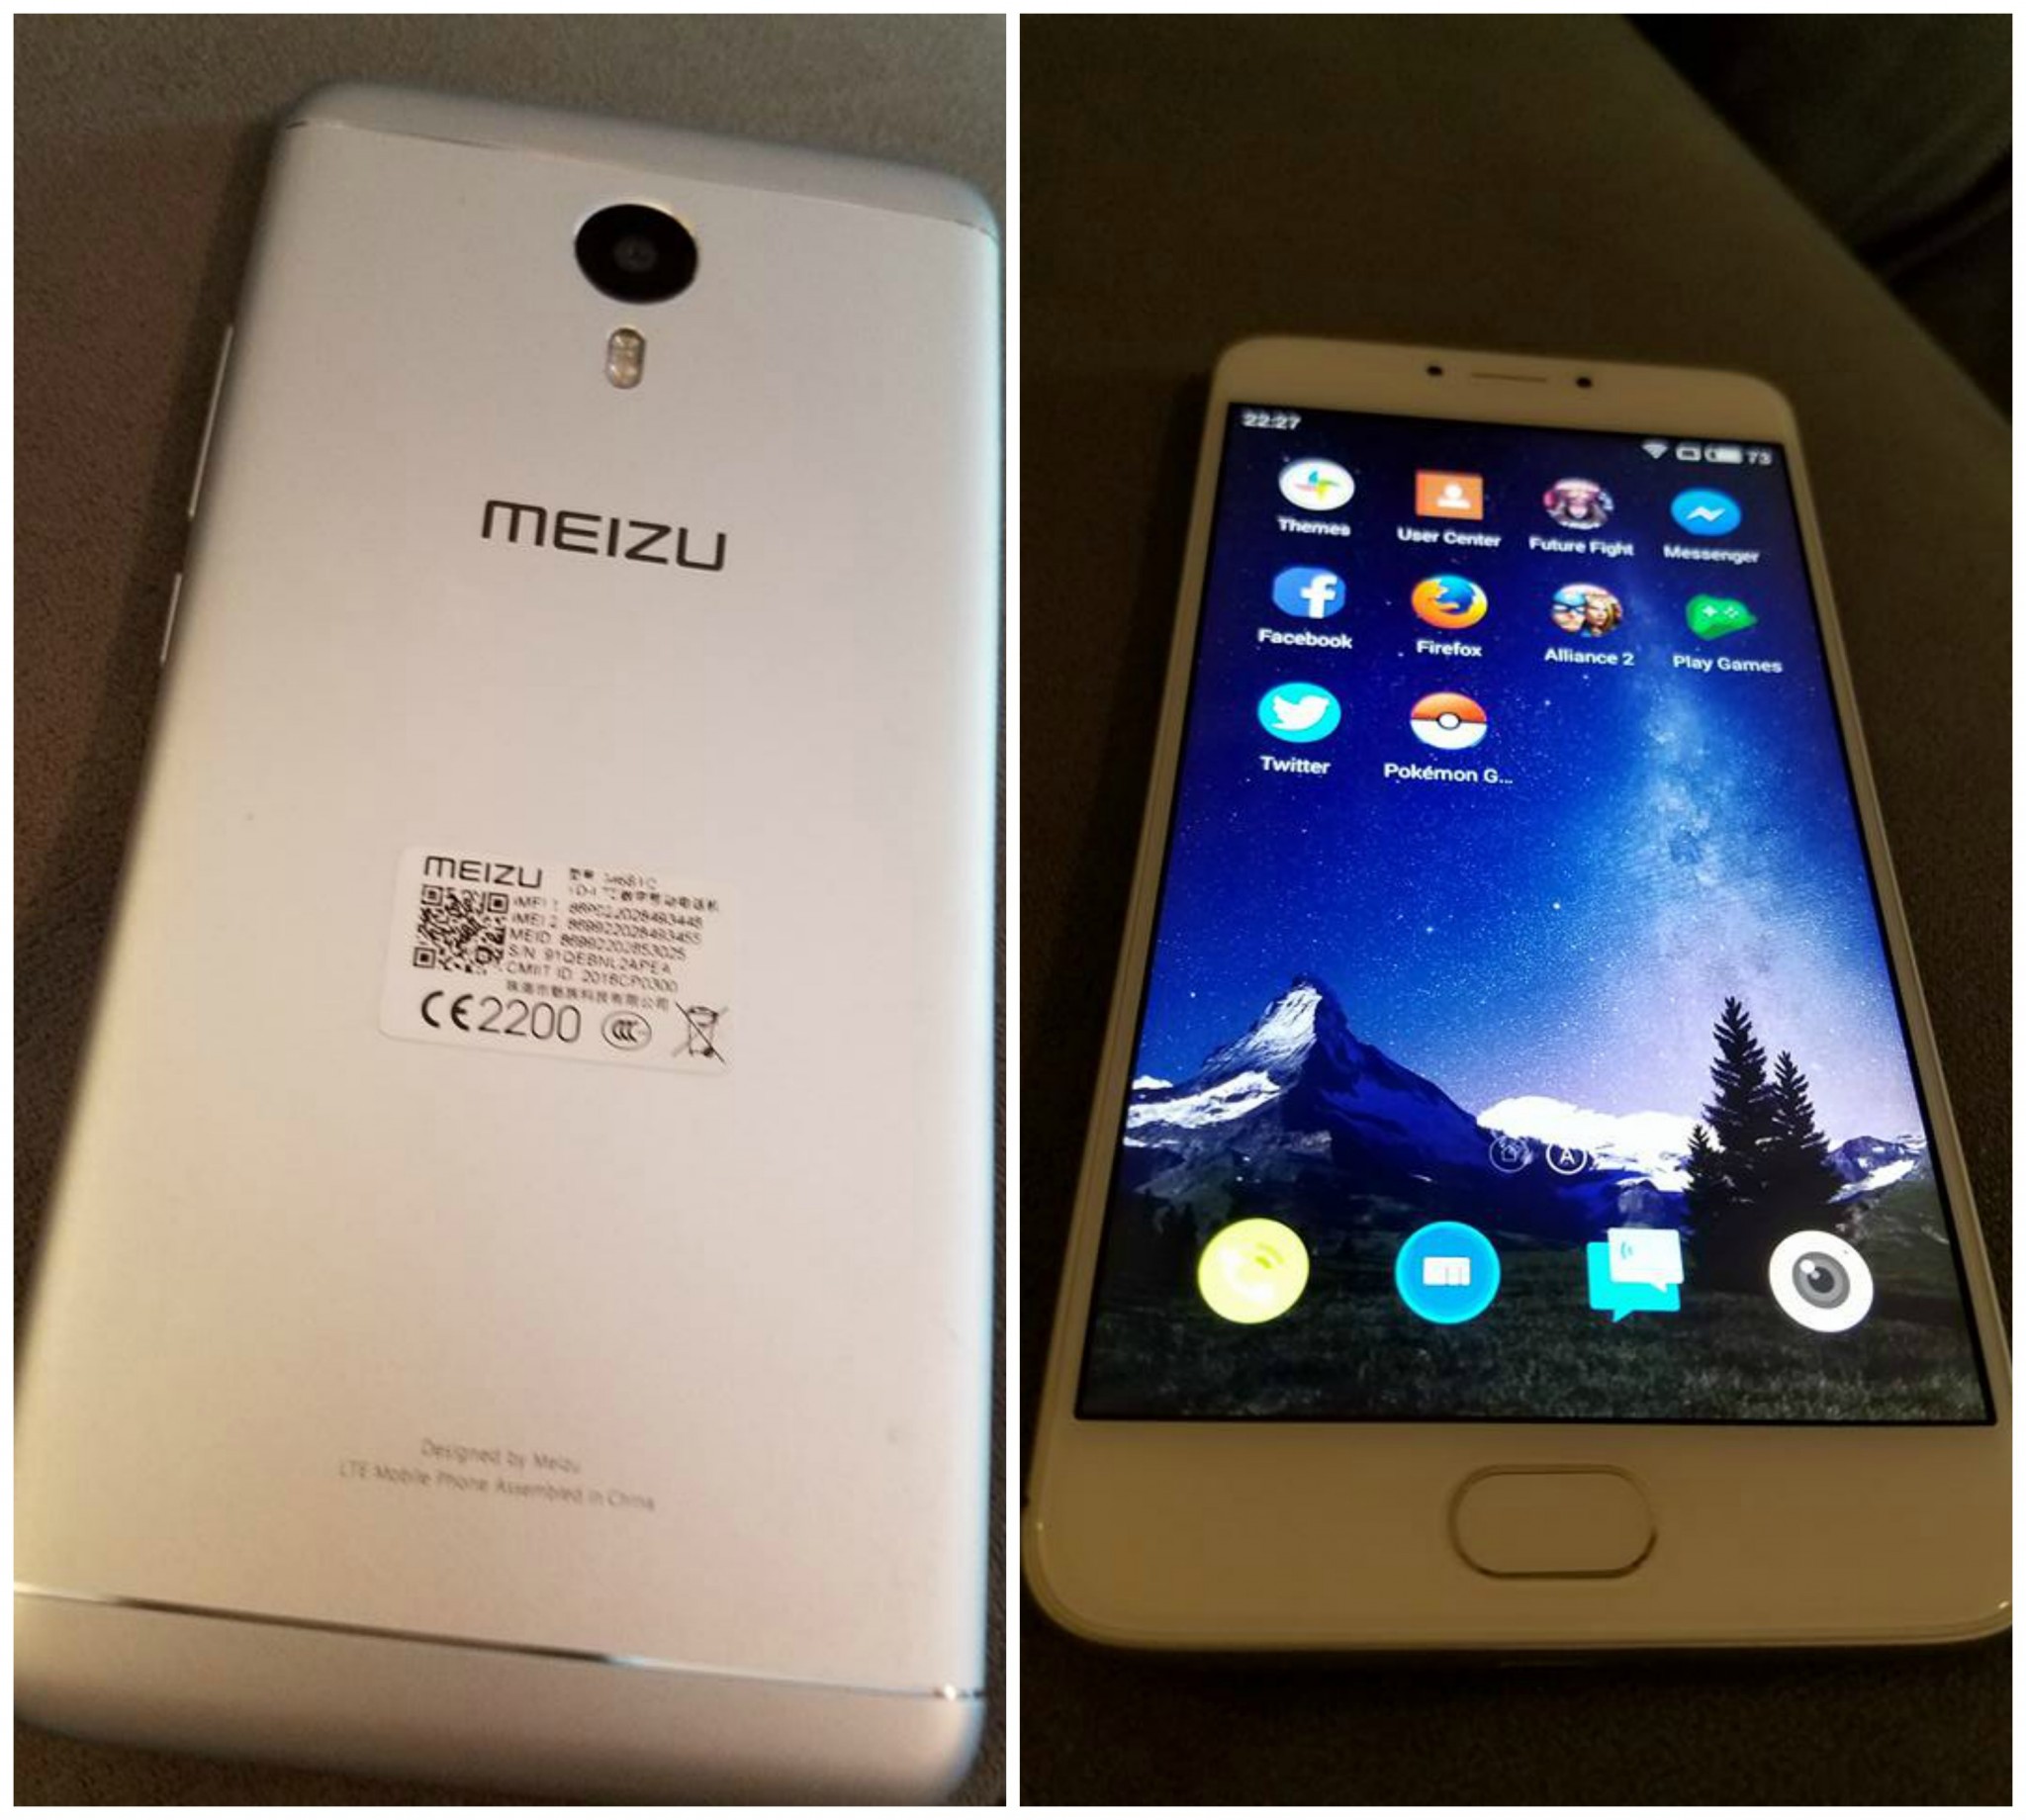 Meizu phone